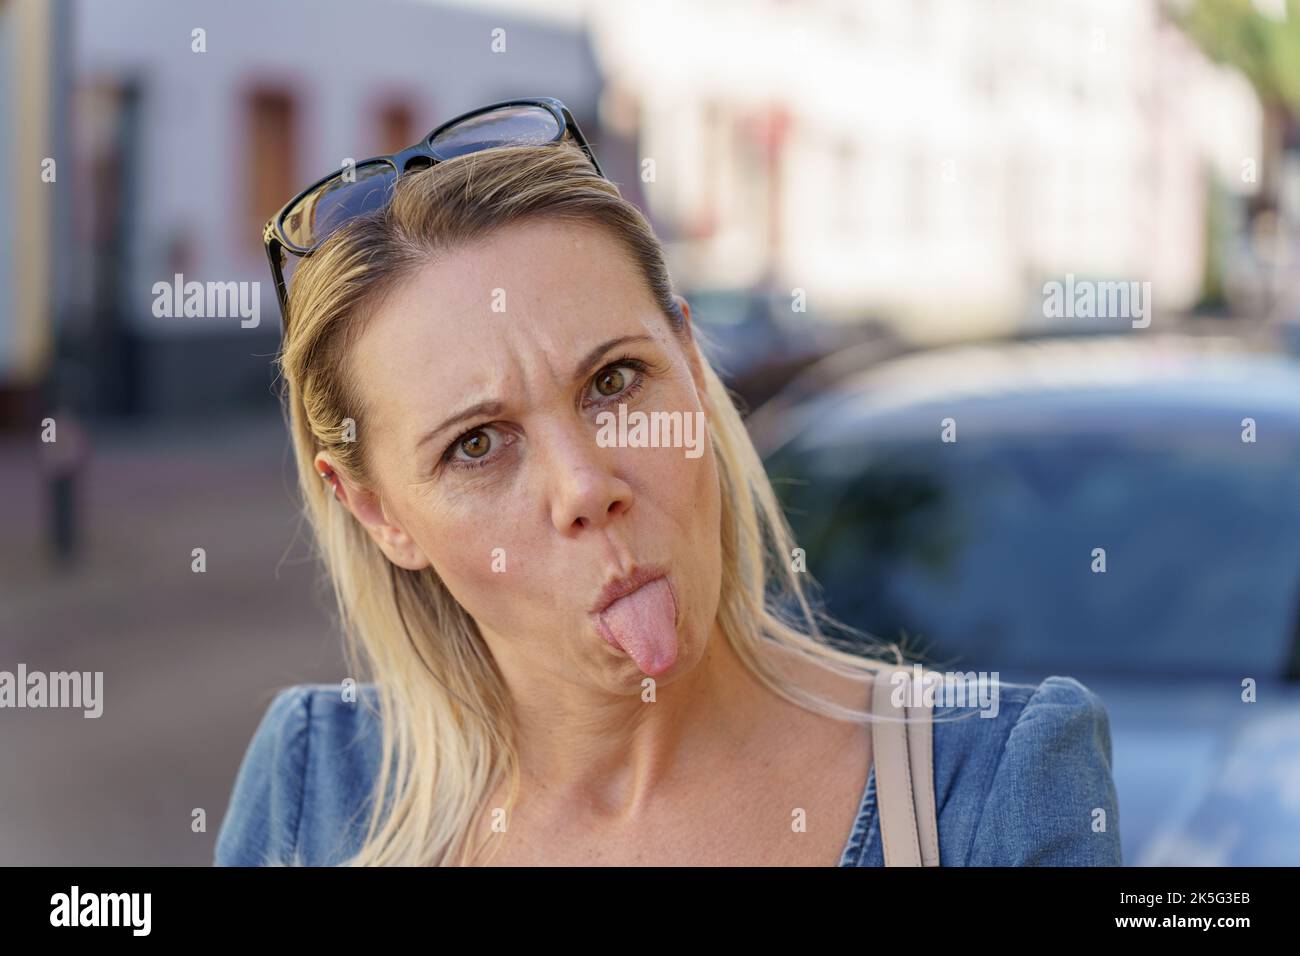 Femme blonde tendance tirant un visage drôle en collant sa langue à la caméra comme elle regarde la caméra Banque D'Images